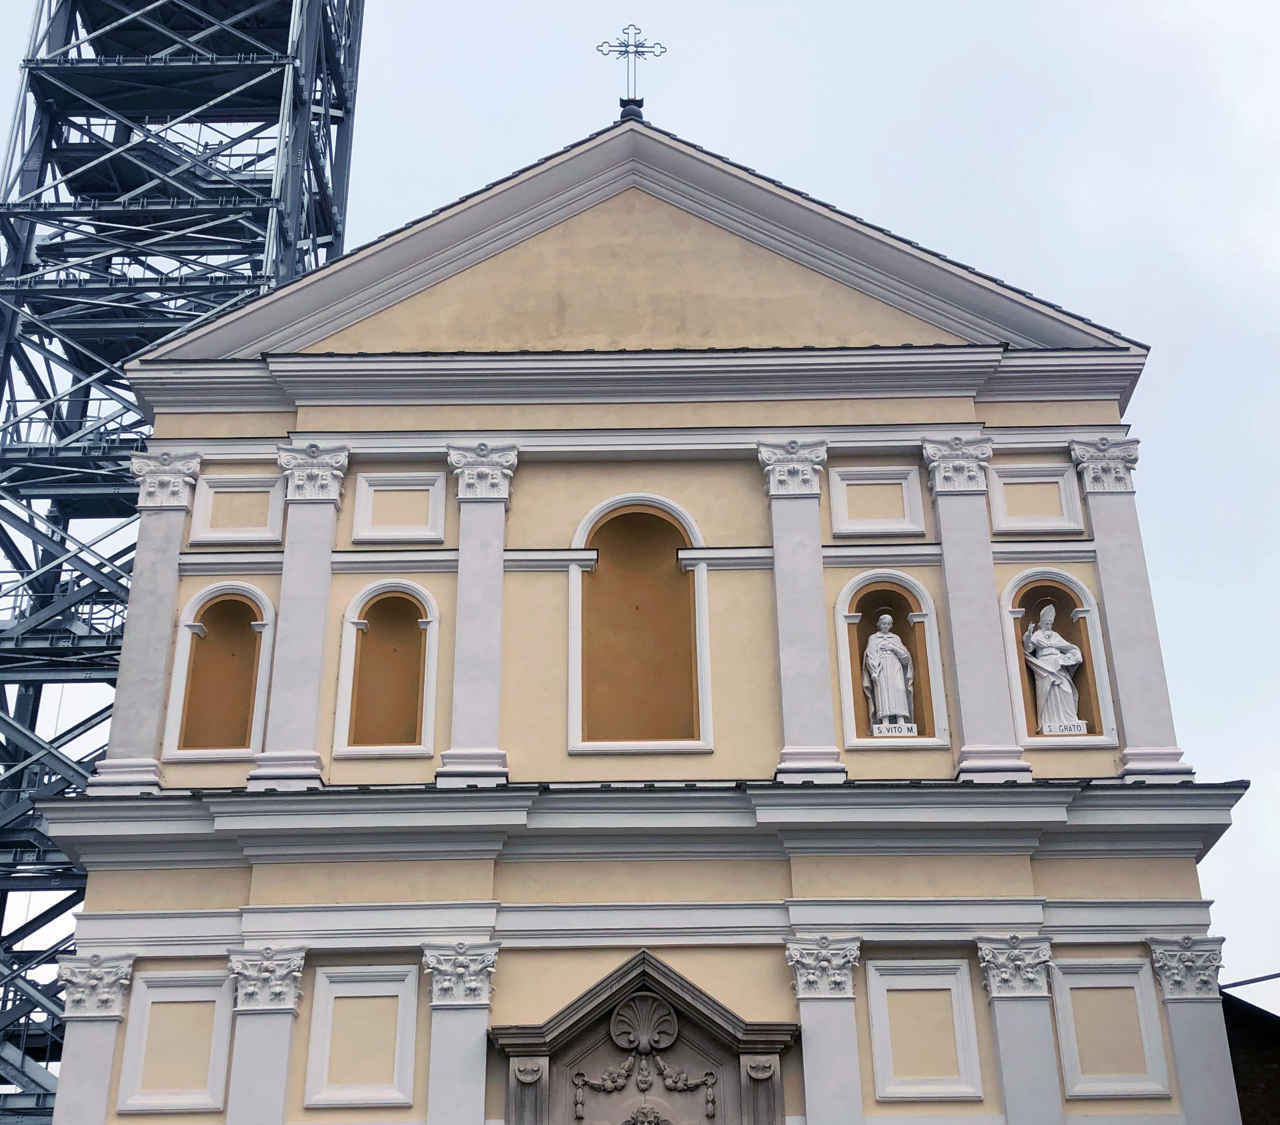 NOLE - Festa Patronale San Vincenzo: campane della torre e statue della facciata in mostra domenica 26 gennaio